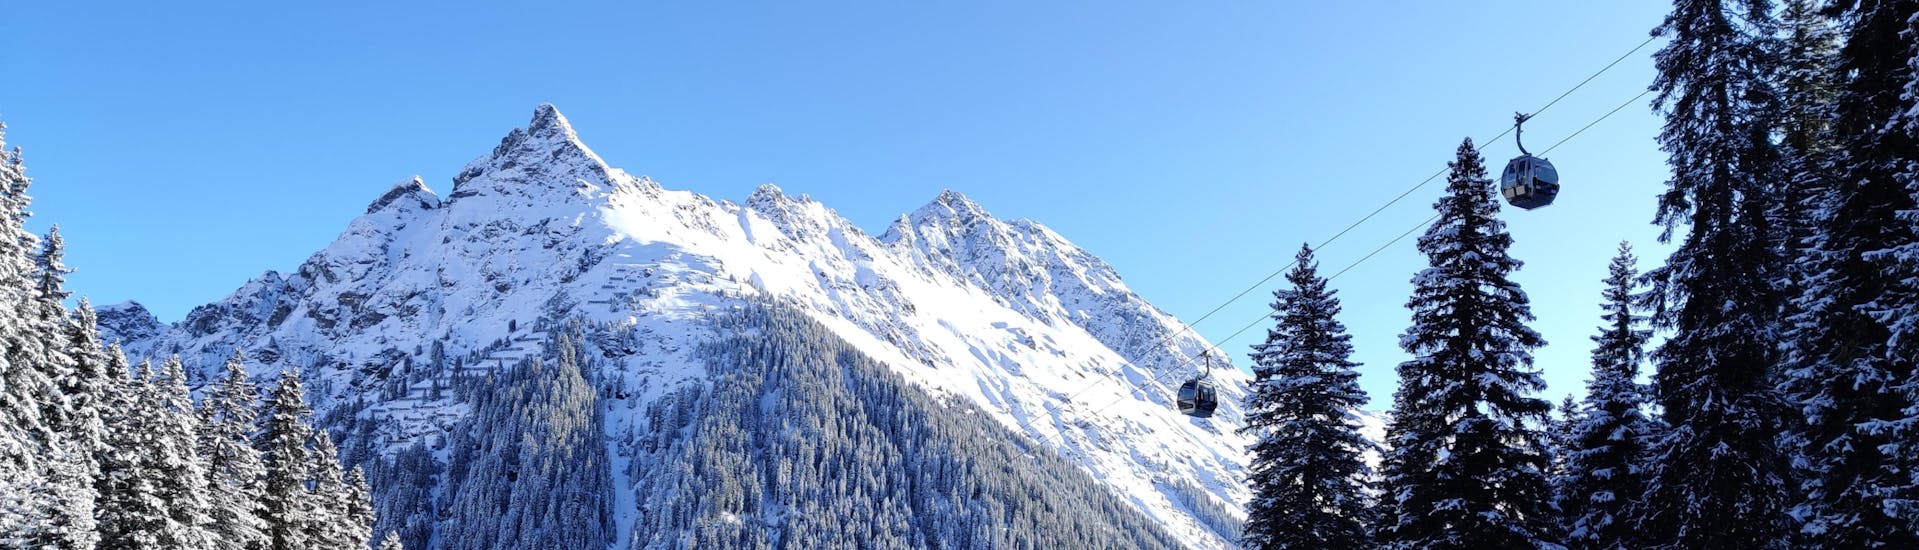 Immagine di uno skilift che sale sulle piste della stazione sciistica di Gargellen, in Austria.